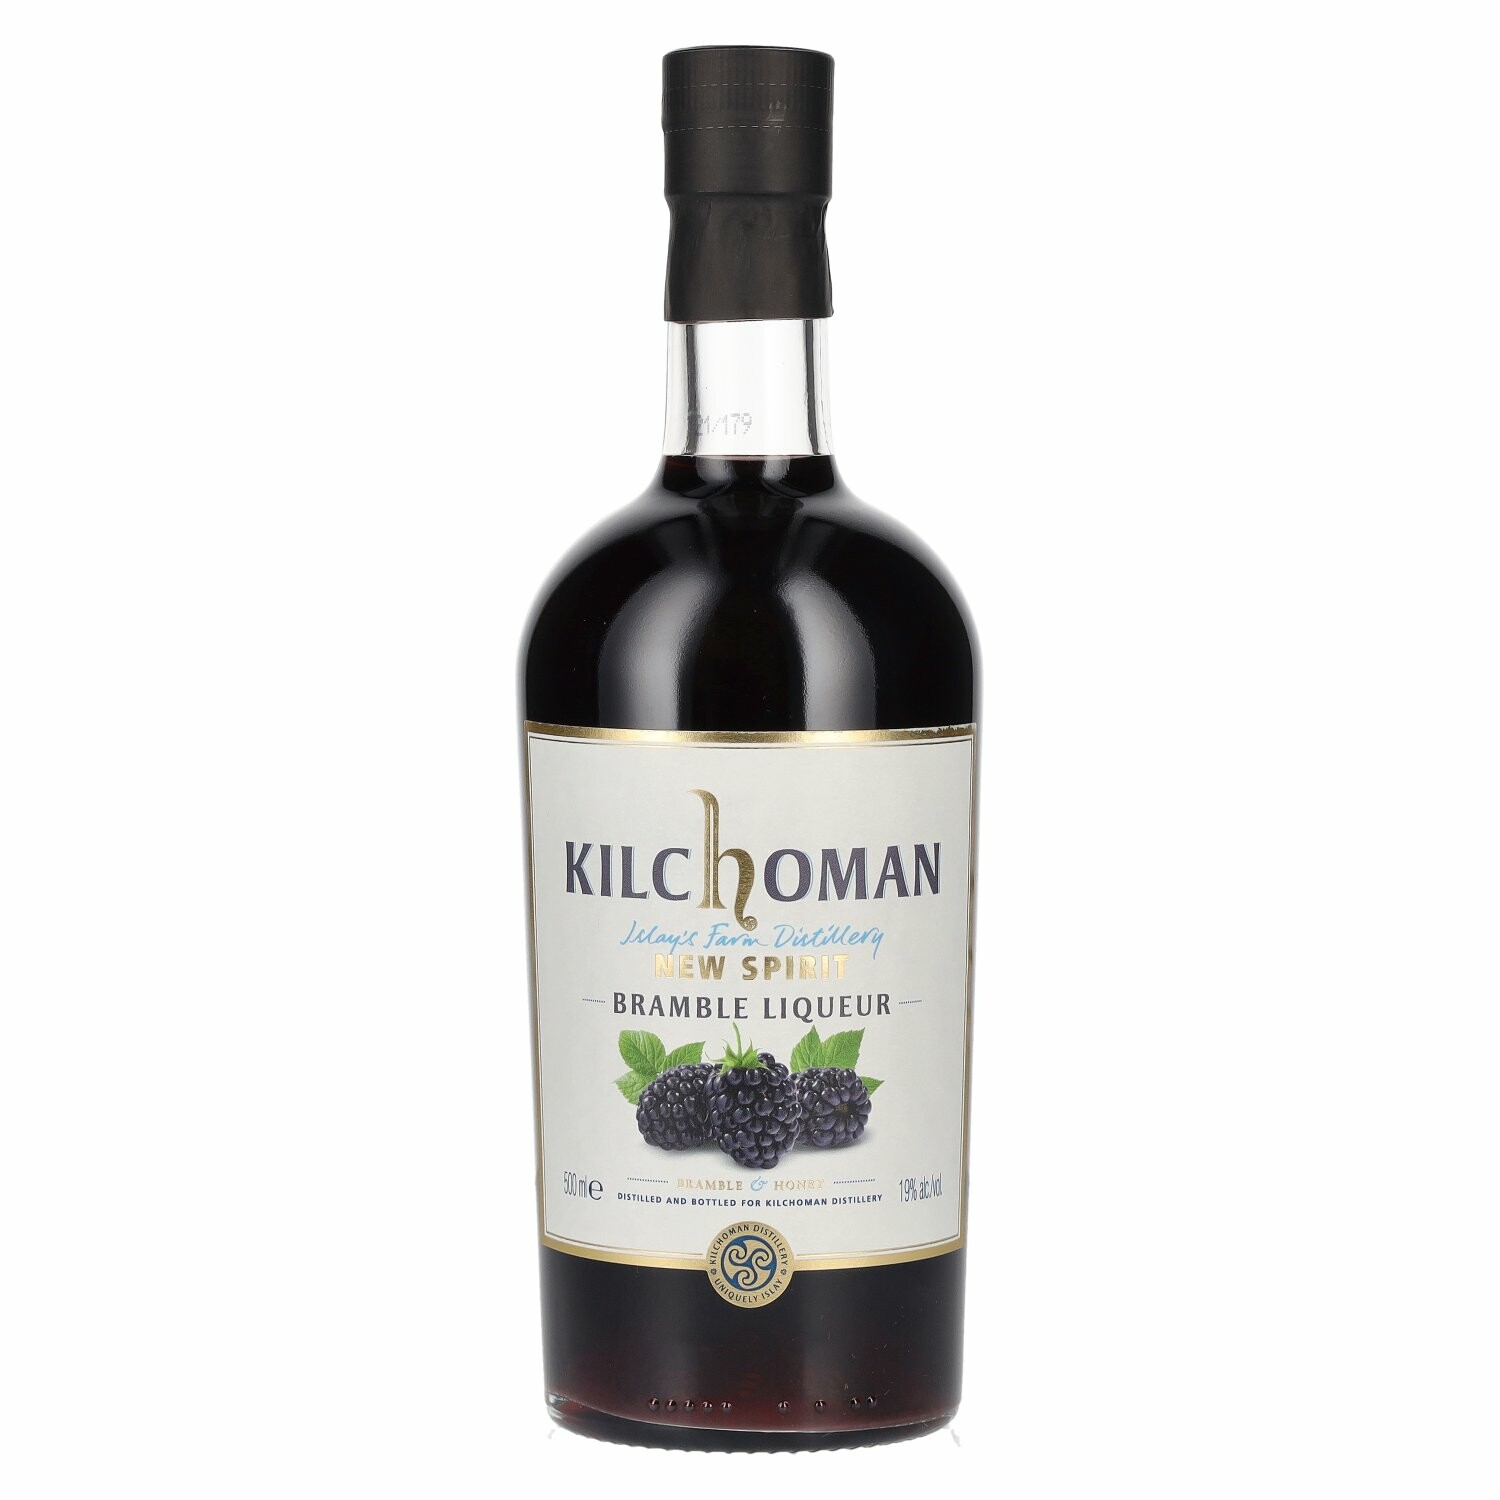 Kilchoman New Spirit Bramble Liqueur 19% Vol. 0,5l